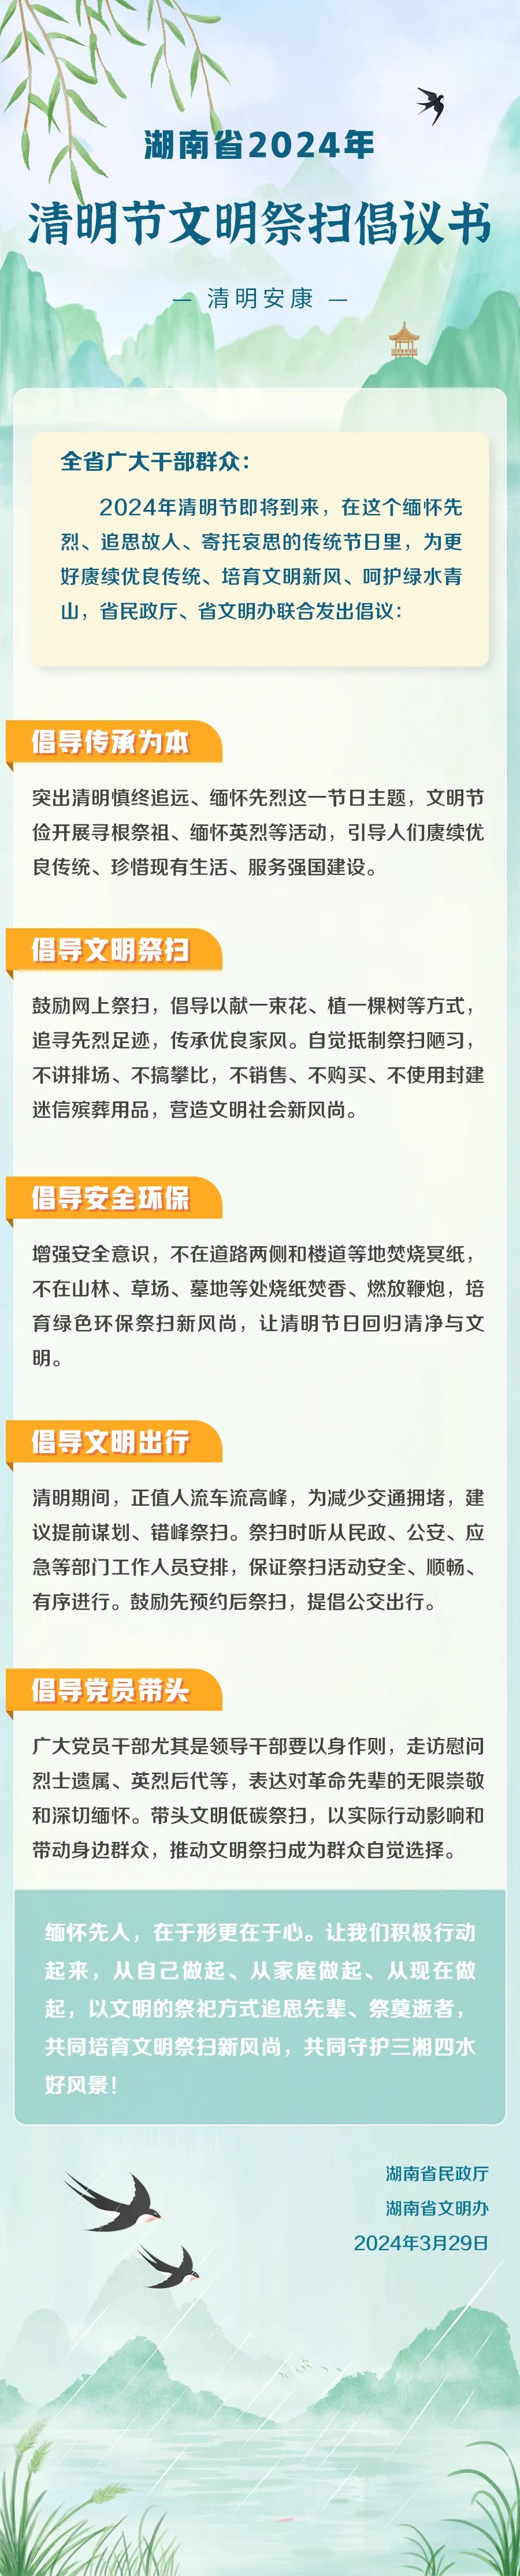 湖南省2024年清明节文明祭扫倡议书